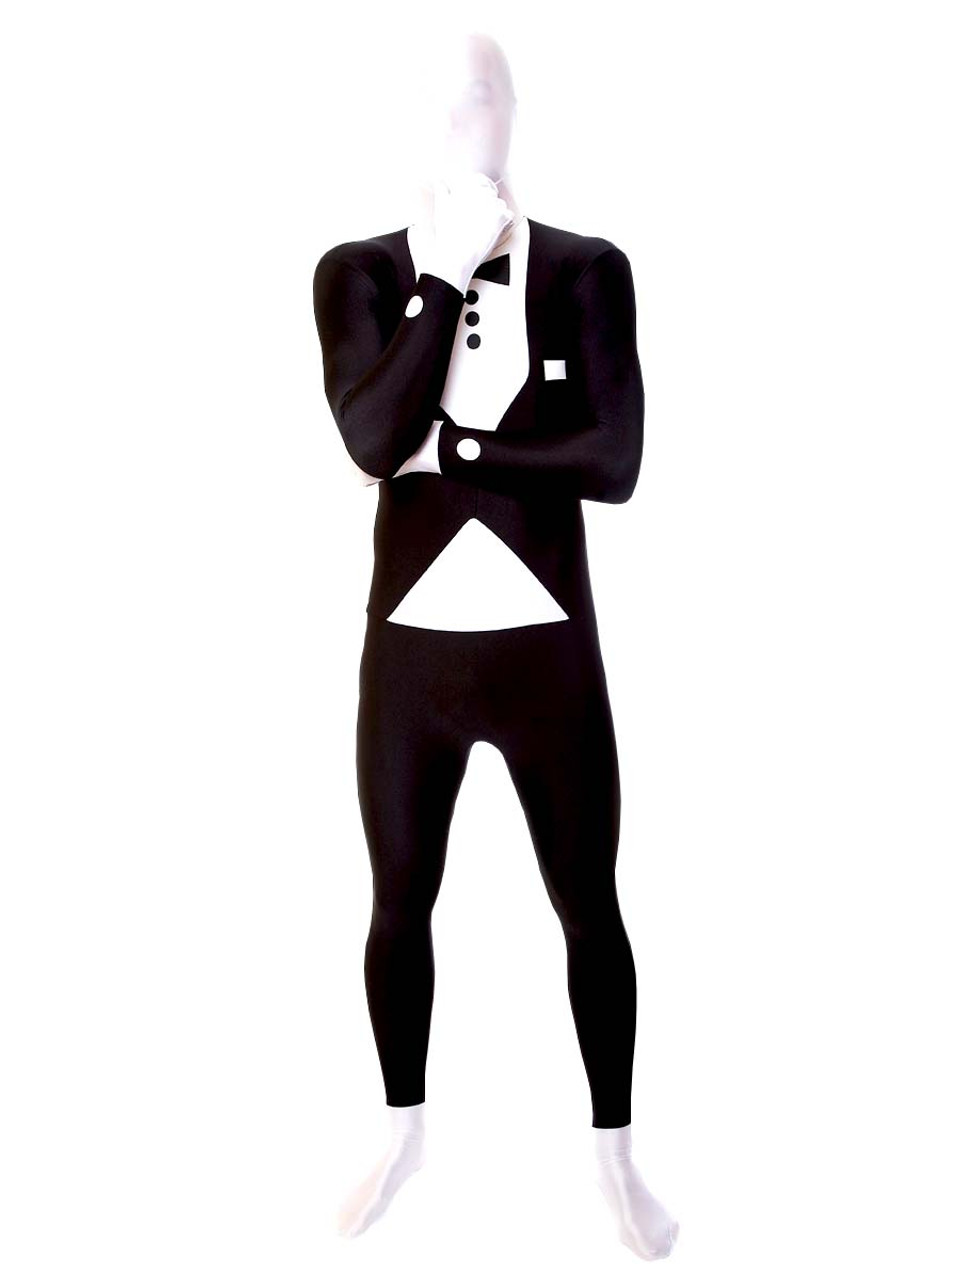 Scottacus Customs - Morph suit, body suits, compression suits